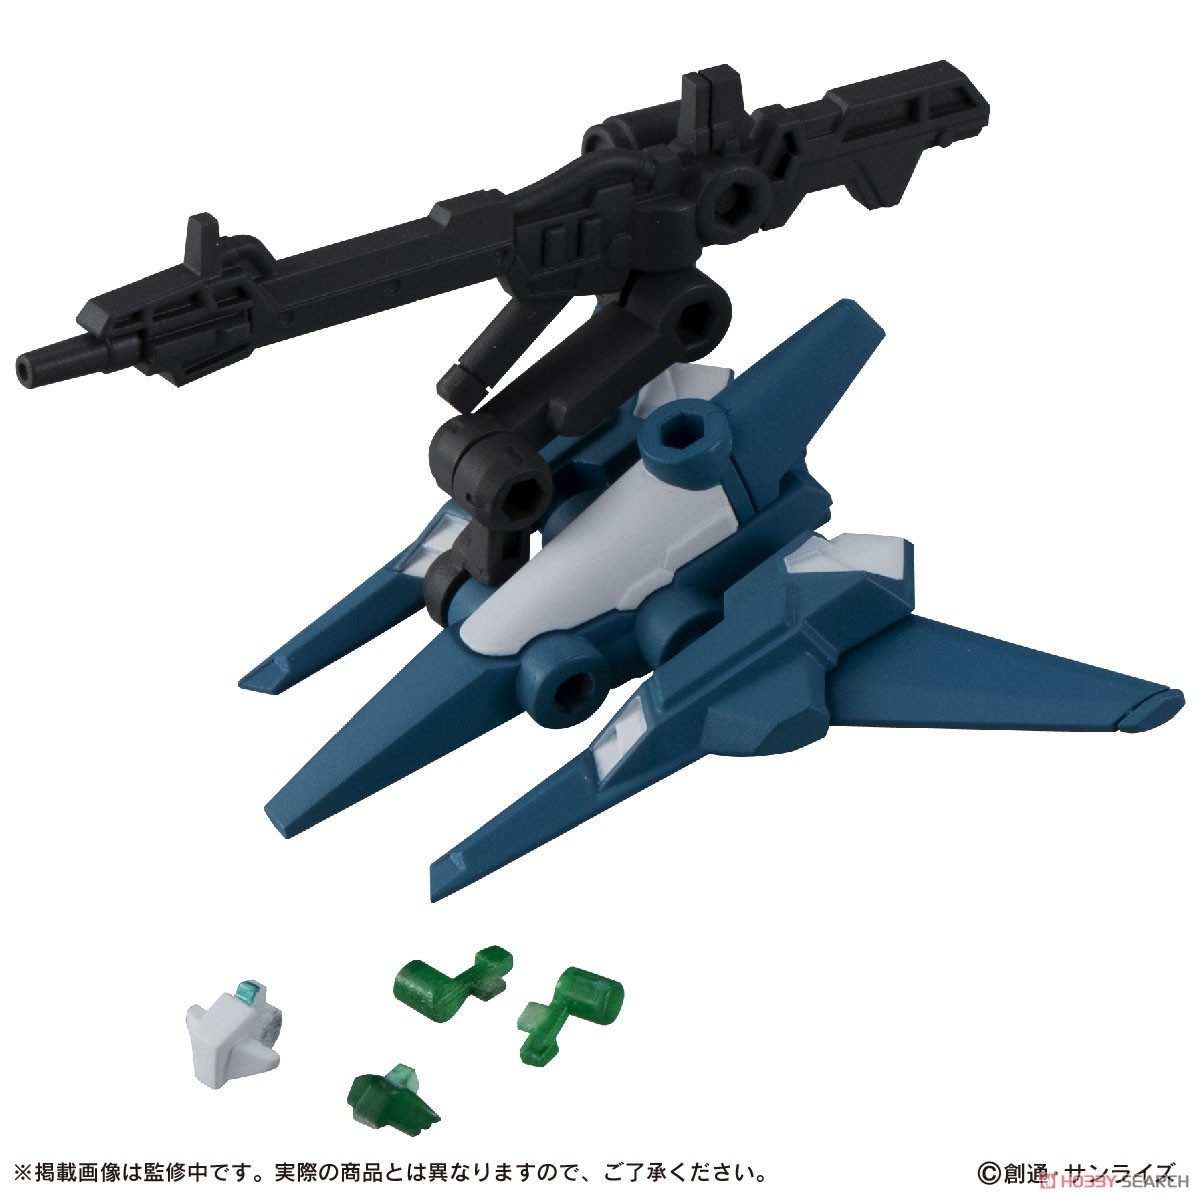 機動戦士ガンダム『MOBILE SUIT ENSEMBLE15』デフォルメ可動フィギュア 10個入りBOX-004